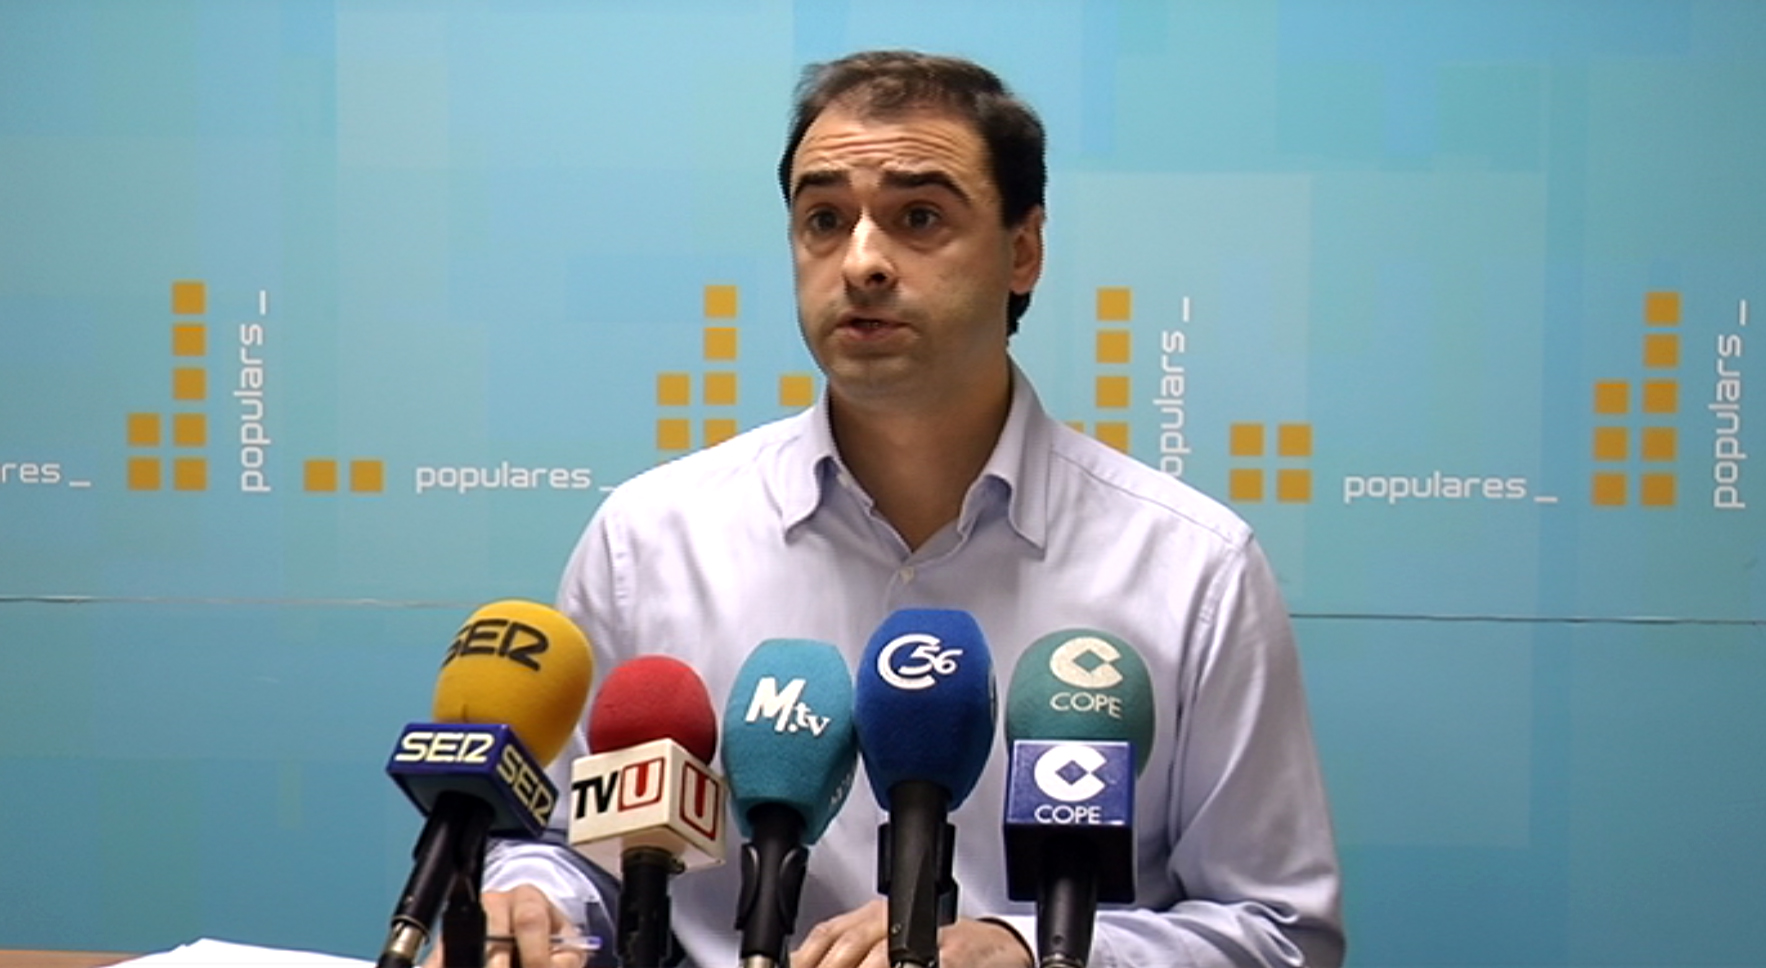 Vinaròs, el PP denuncia que el govern municipal anteposa els interessos partidistes als dels ciutadans